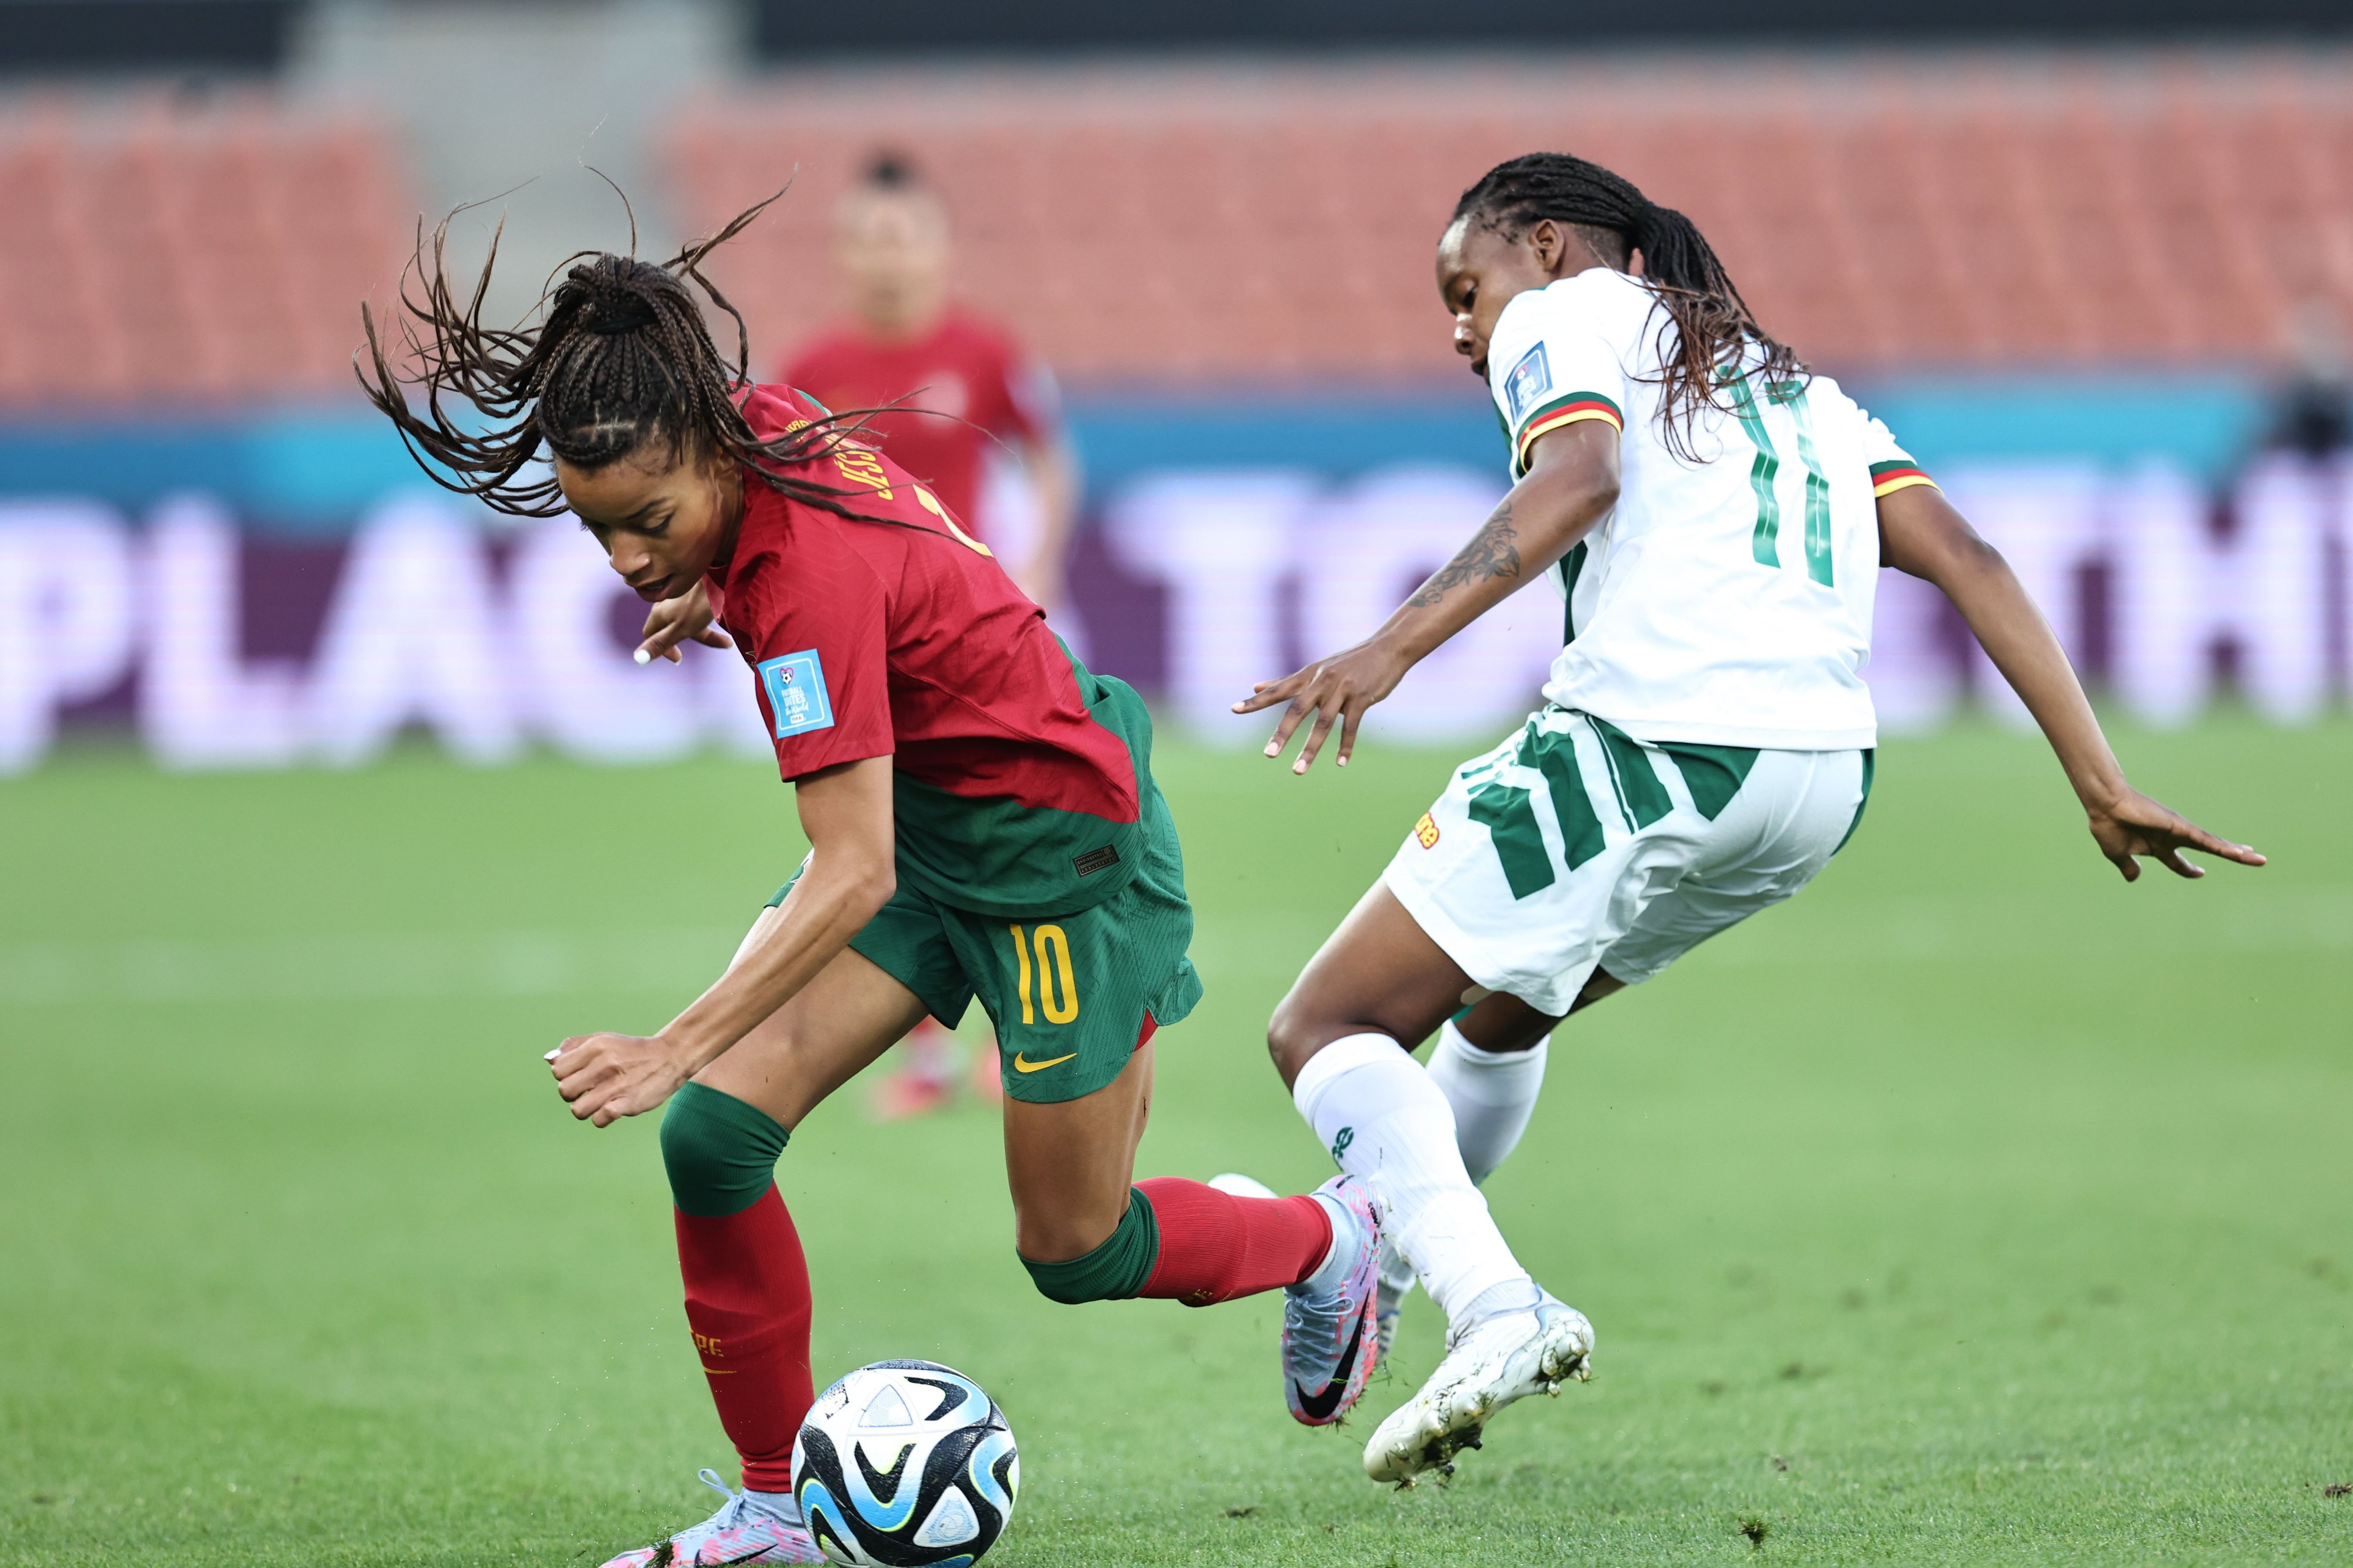 Seleção feminina faz história ao apurar-se para o Euro2017 - Seleção  Nacional Feminino - SAPO Desporto